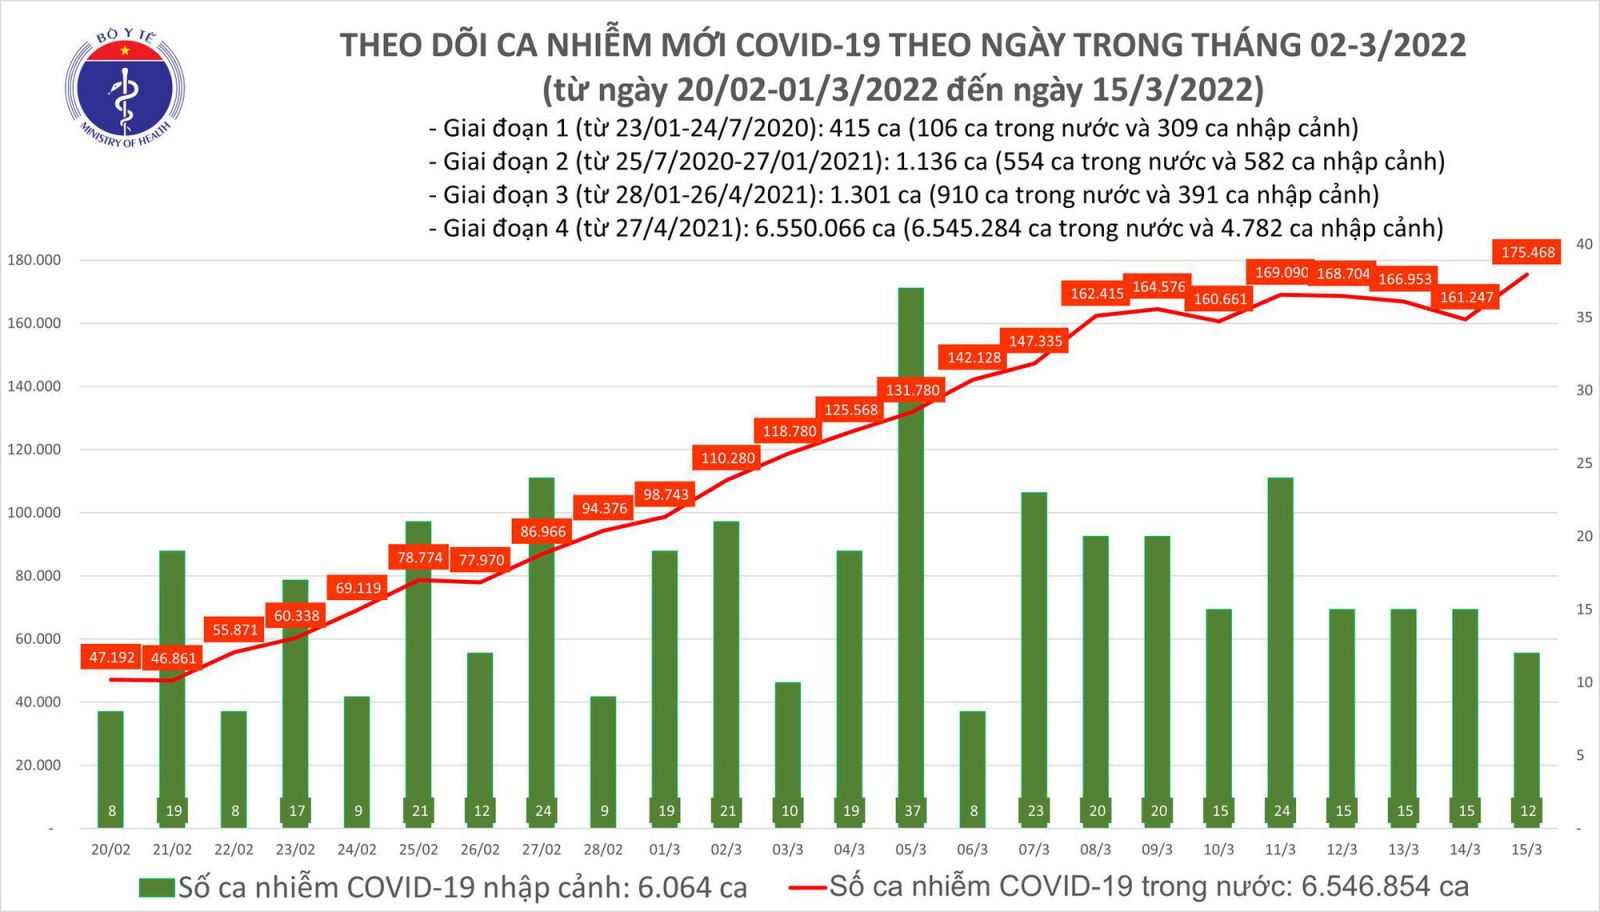 Ngày 15/3: Số ca mắc COVID -19 trên cả nước tăng vọt lên 175.480 ca; bệnh nhân tử vong giảm